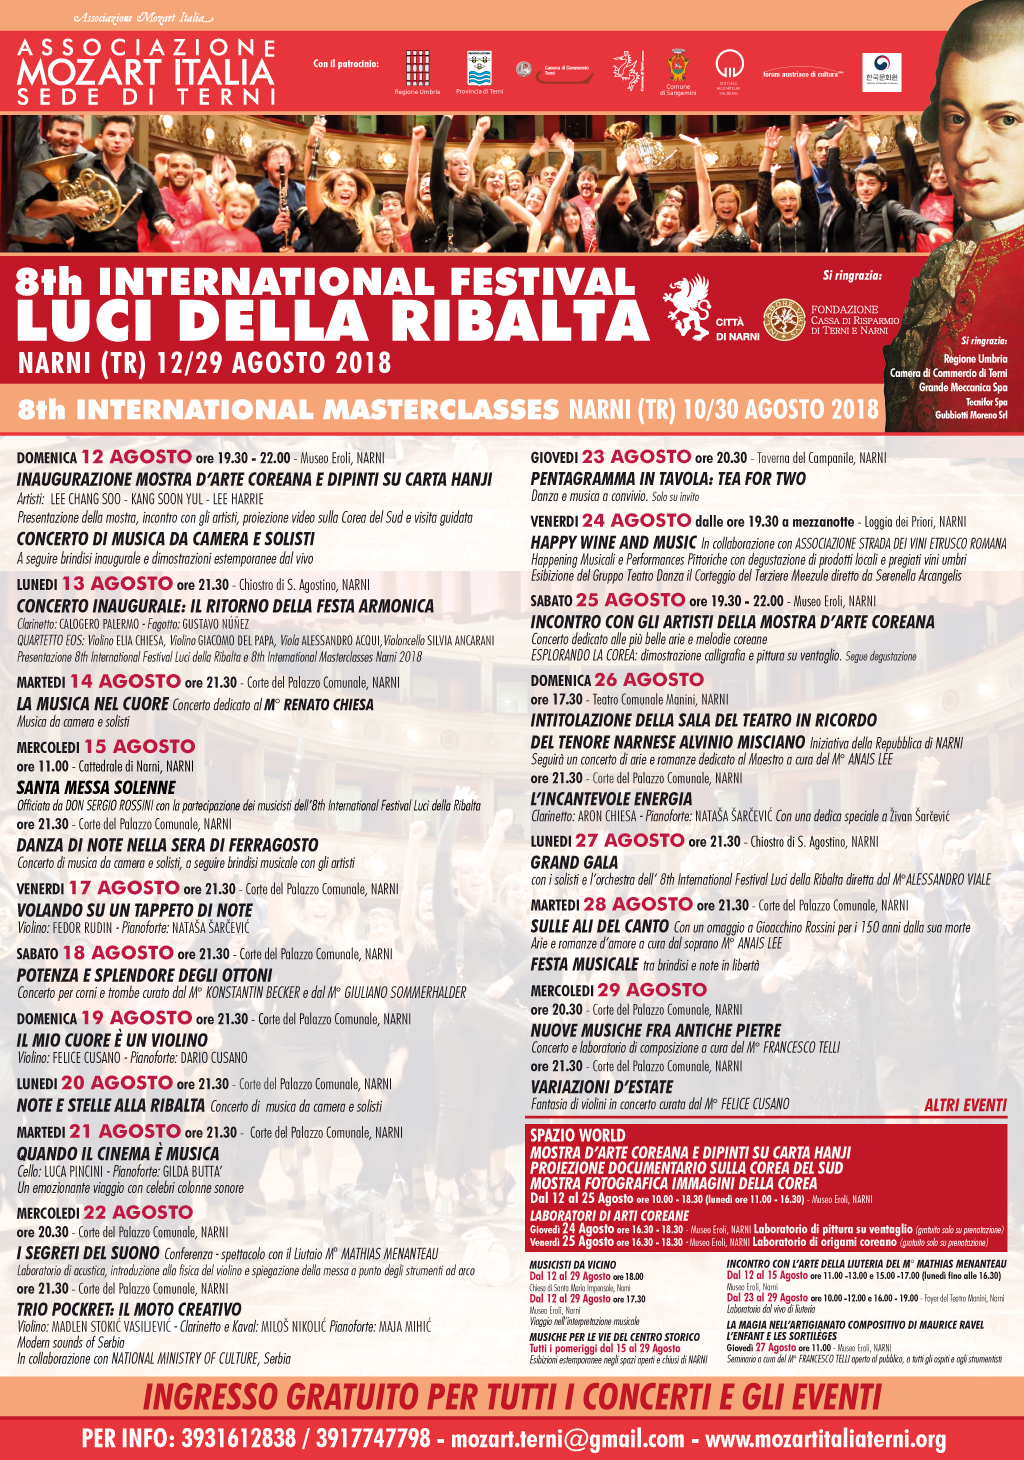 8TH INTERNATIONA FESTIVAL LUCI DELLA RIBALTA